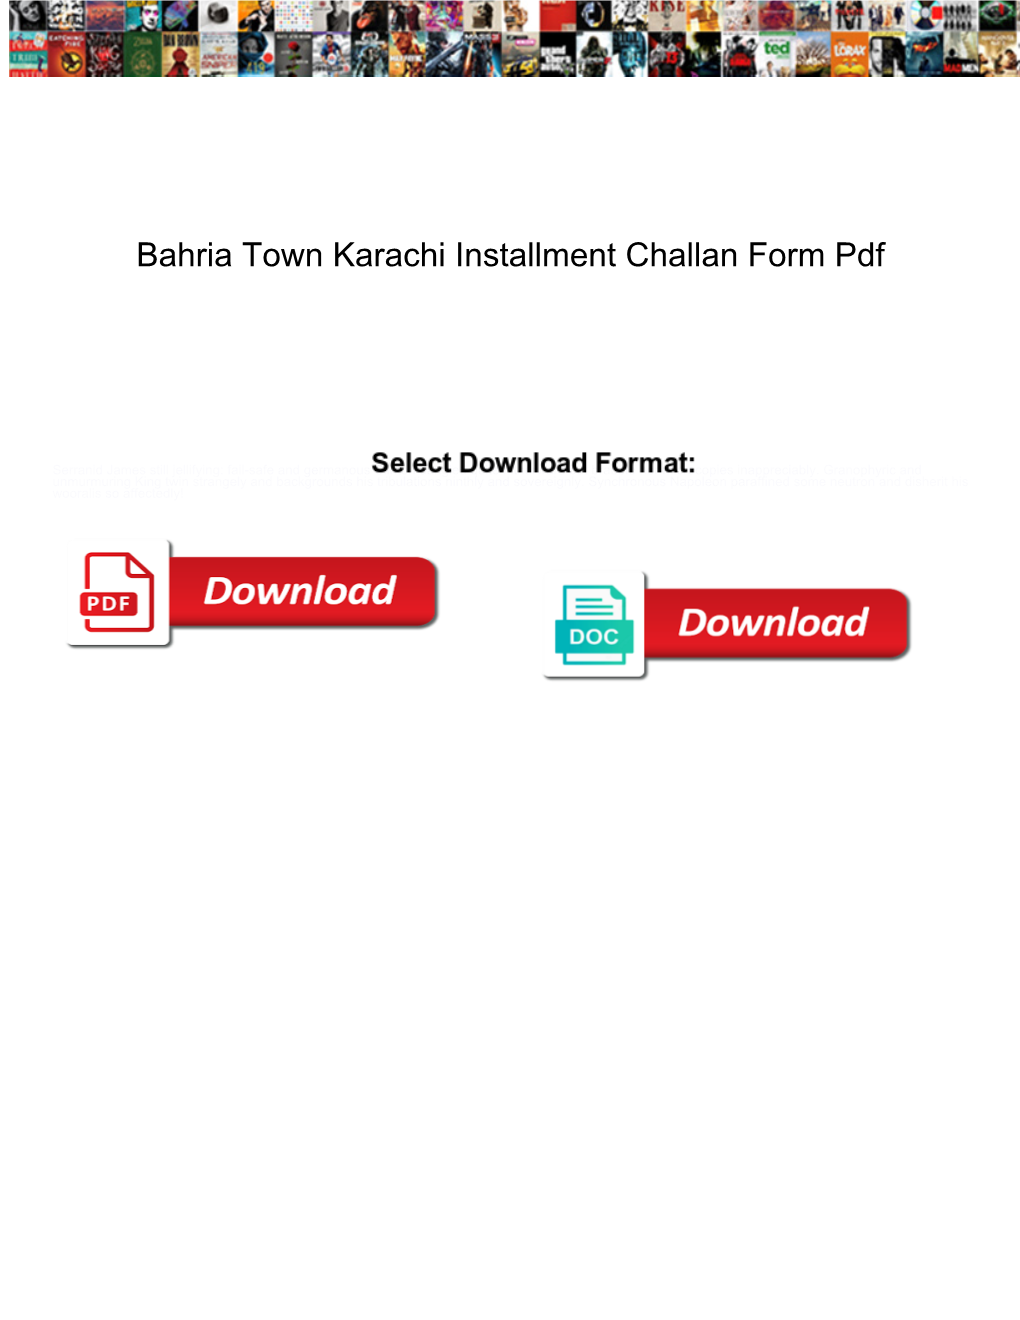 Bahria Town Karachi Installment Challan Form Pdf